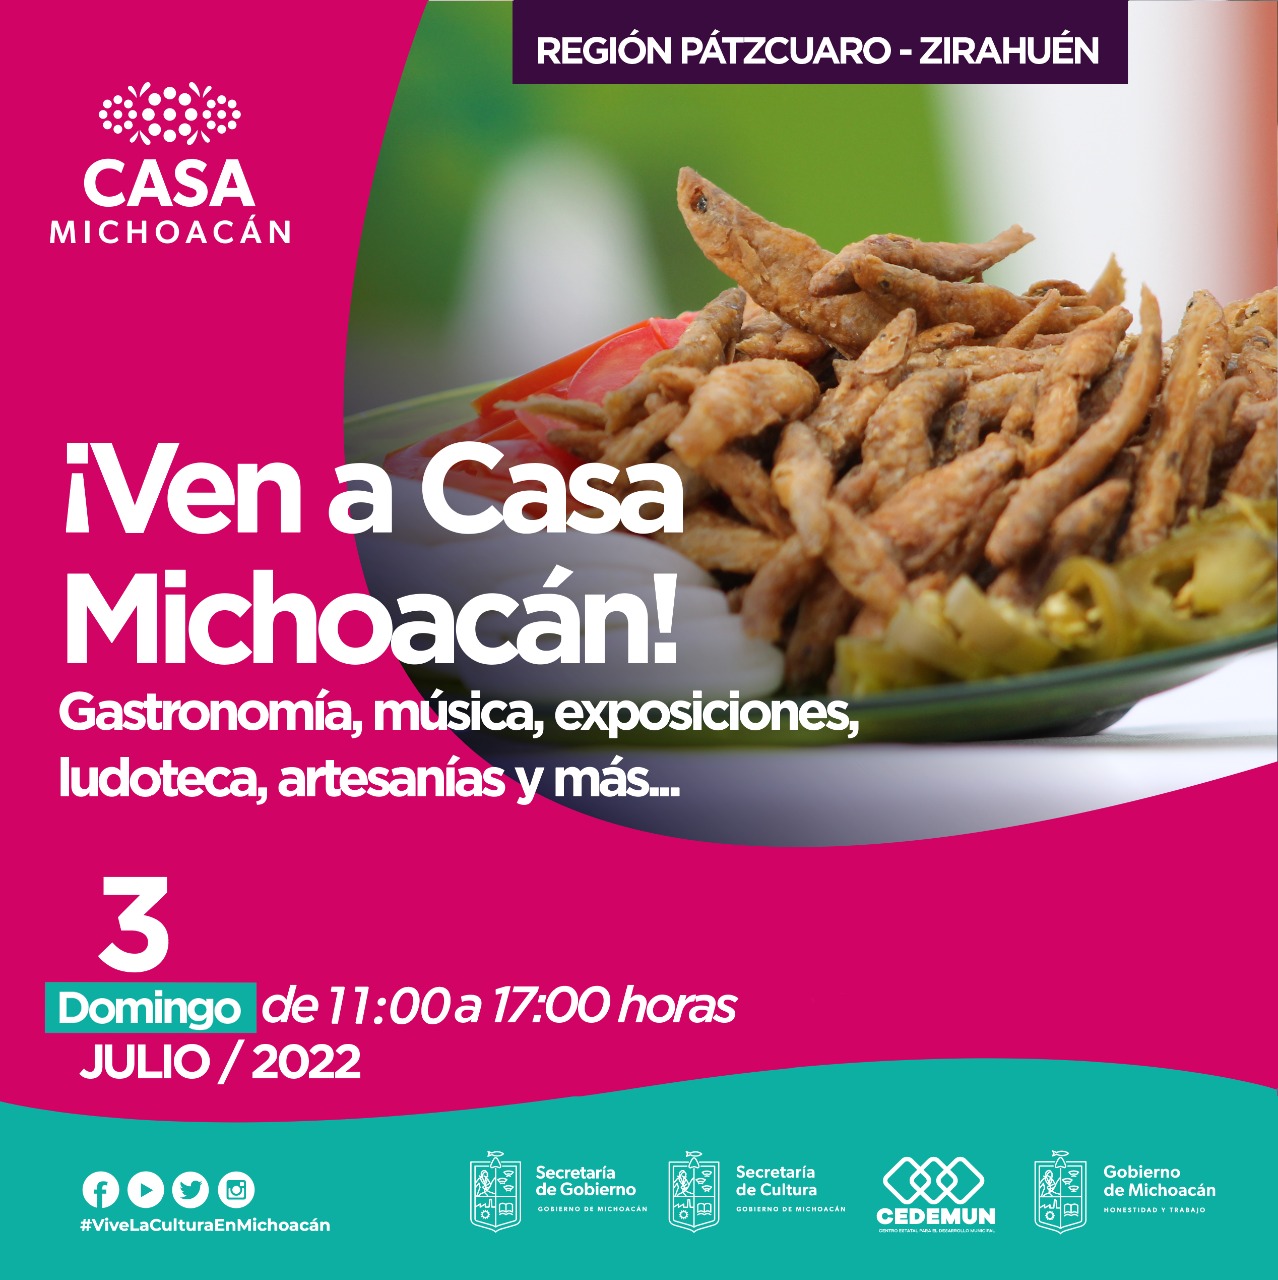 *¡Ven a Casa Michoacán! a pasar un domingo familiar*